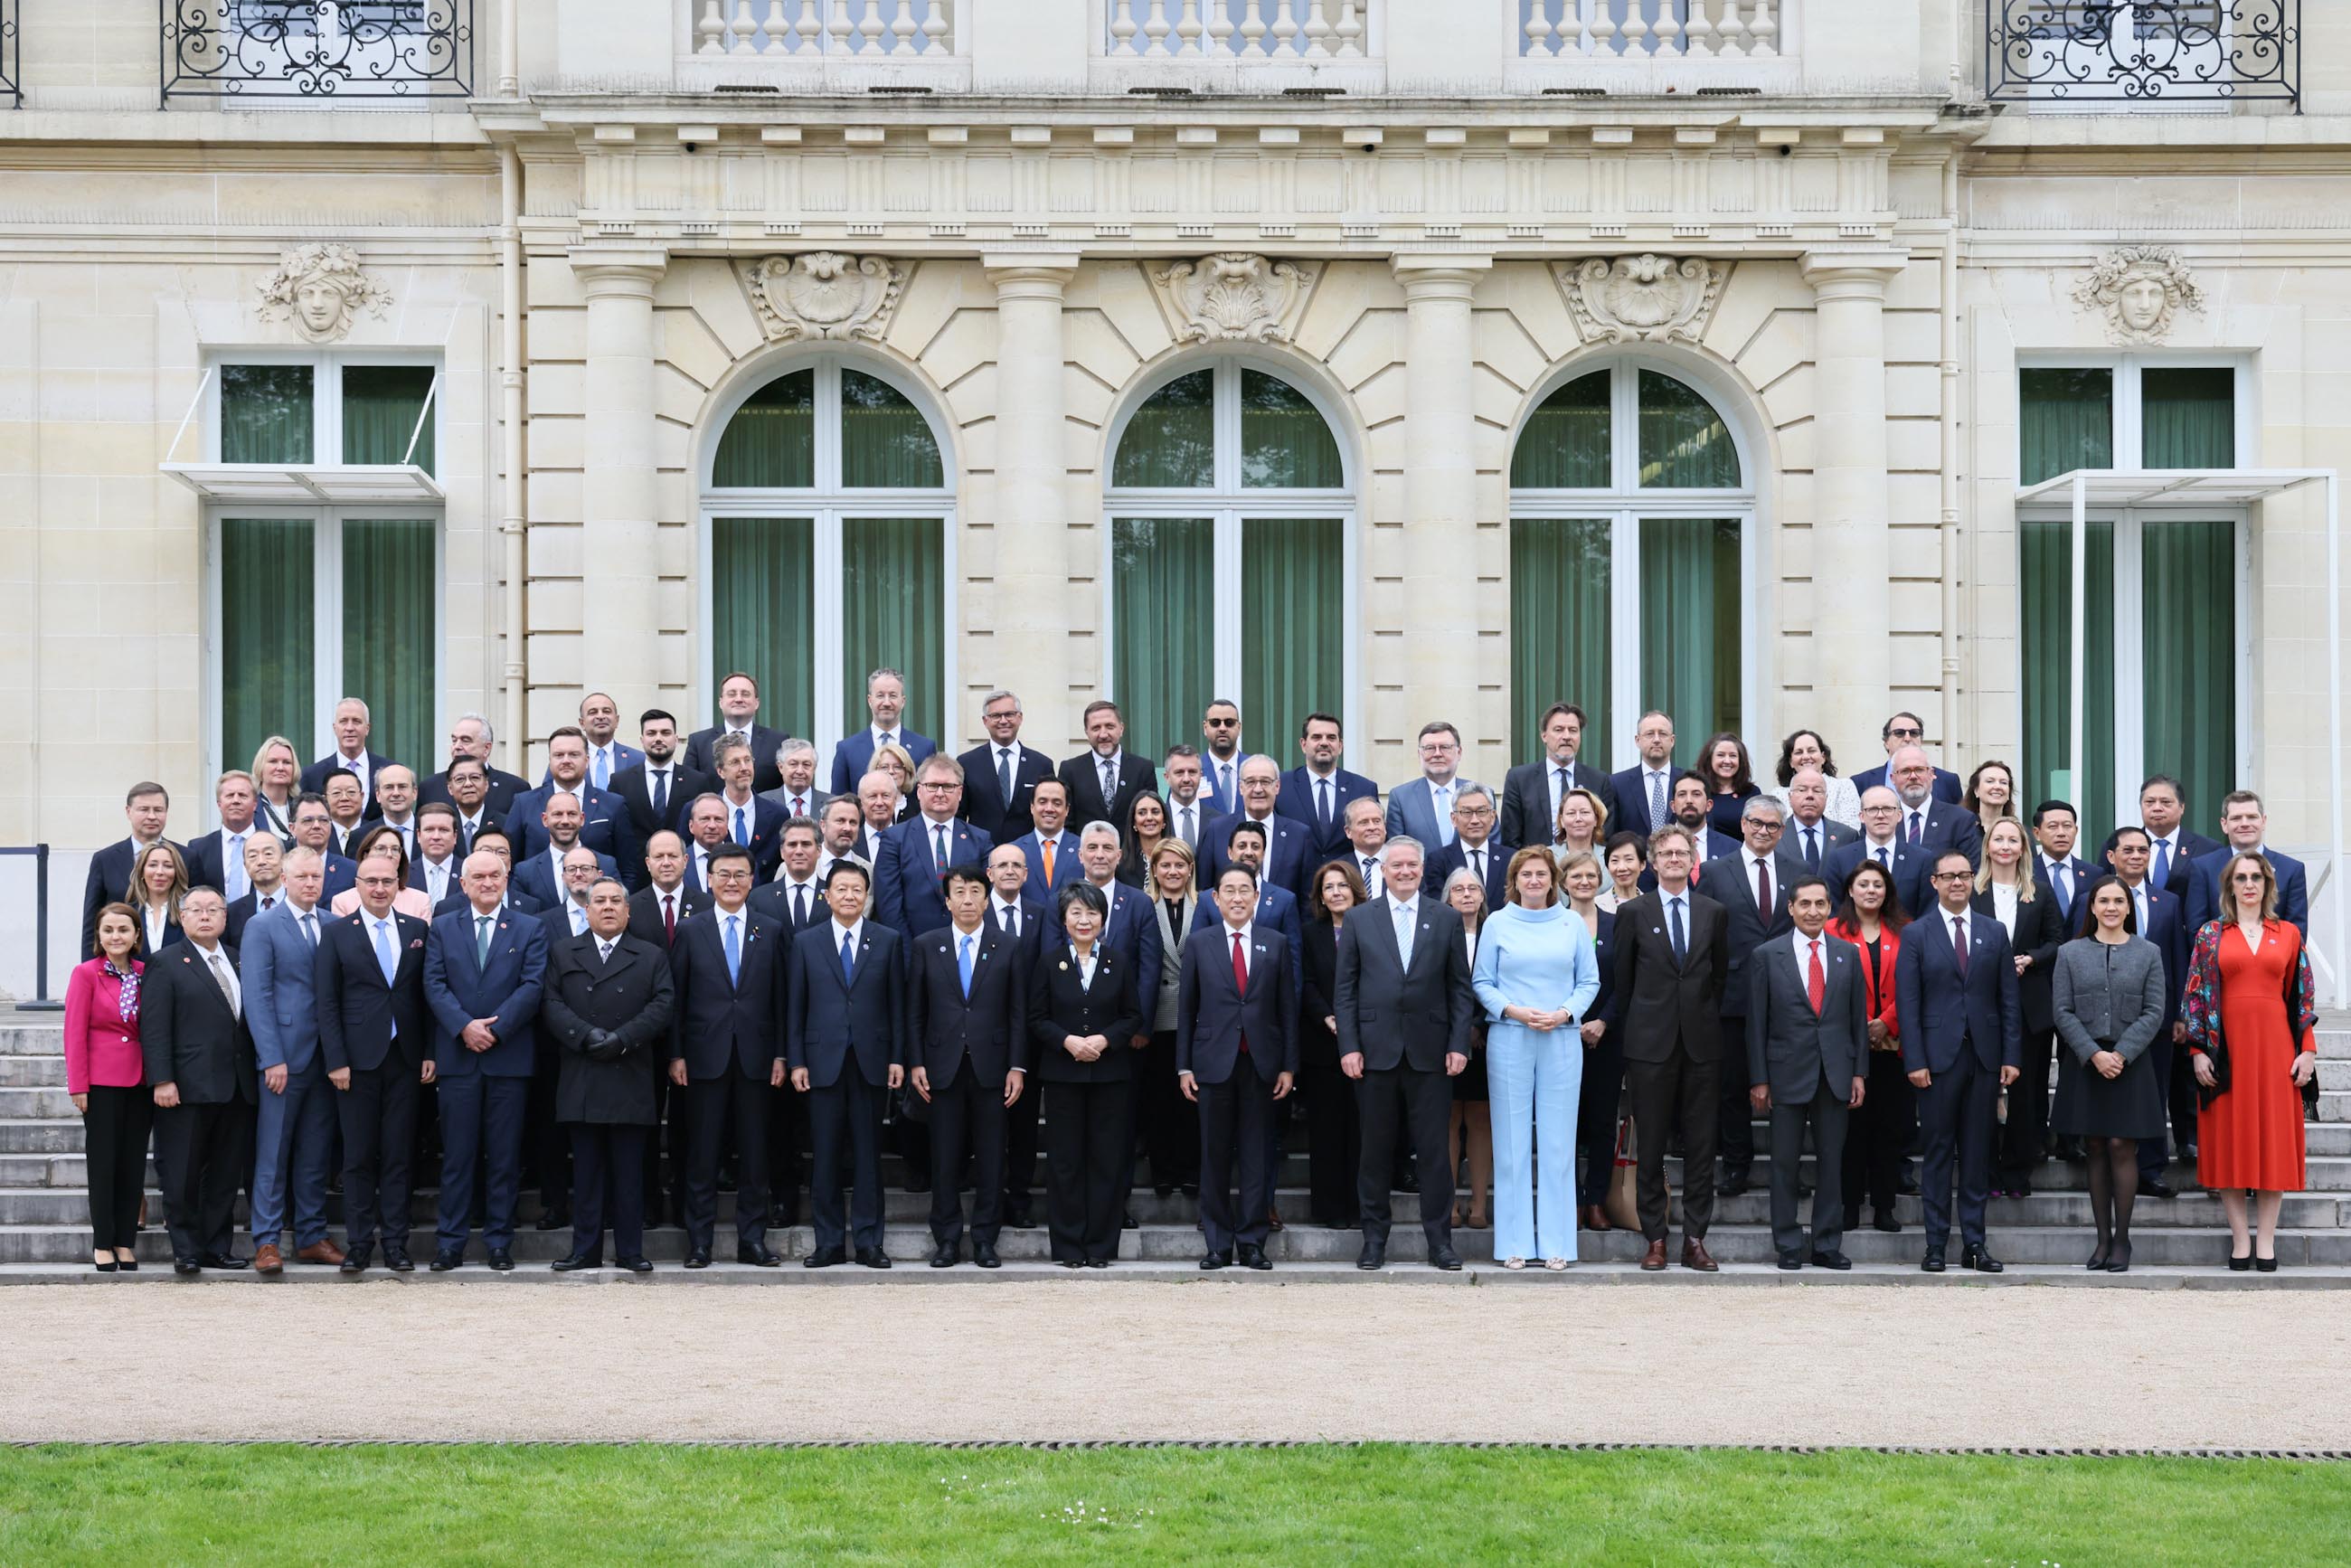 OECD Commemorative Photo (1)